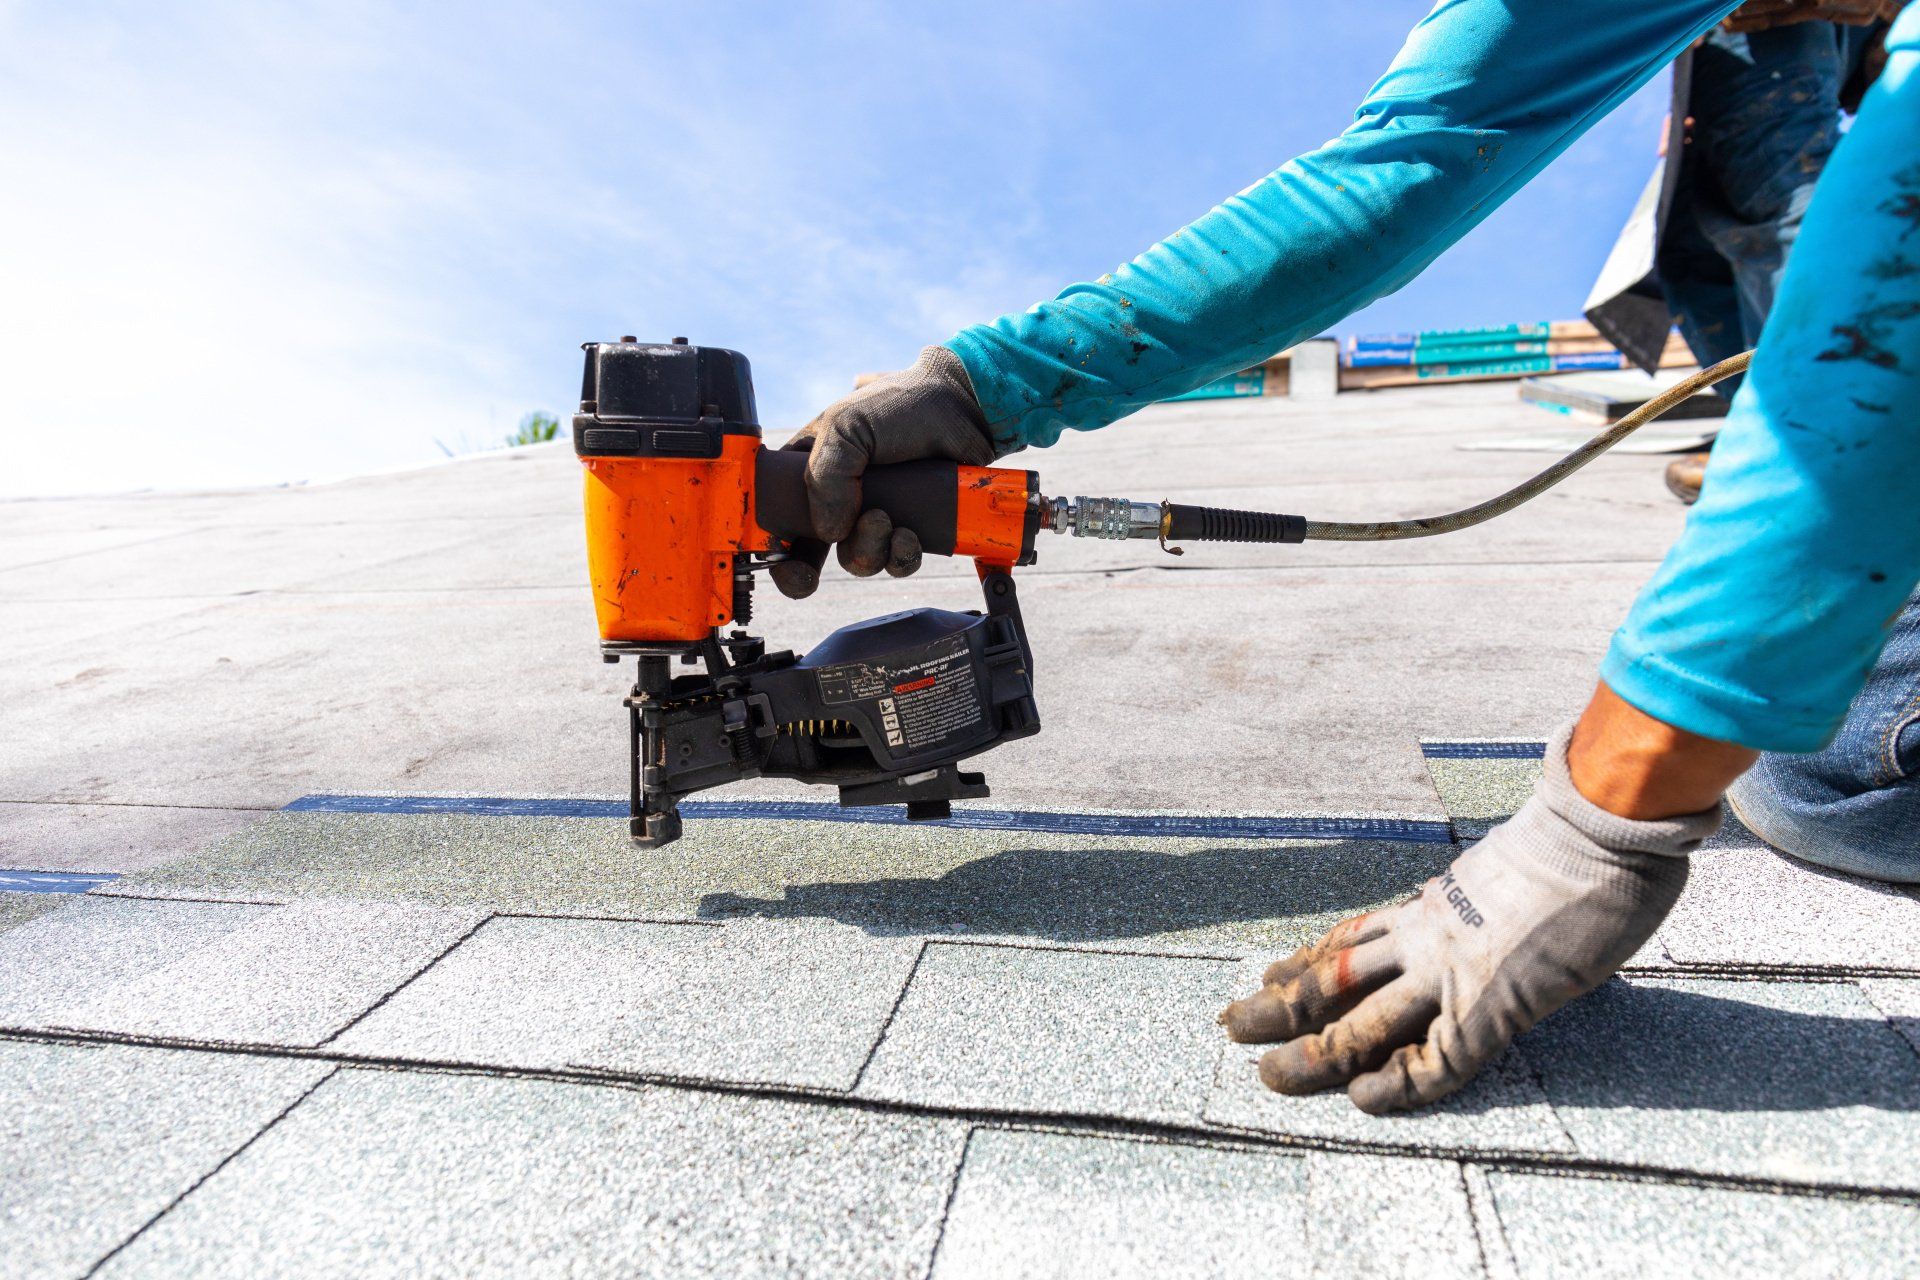 A roofer installs asphalt shingles